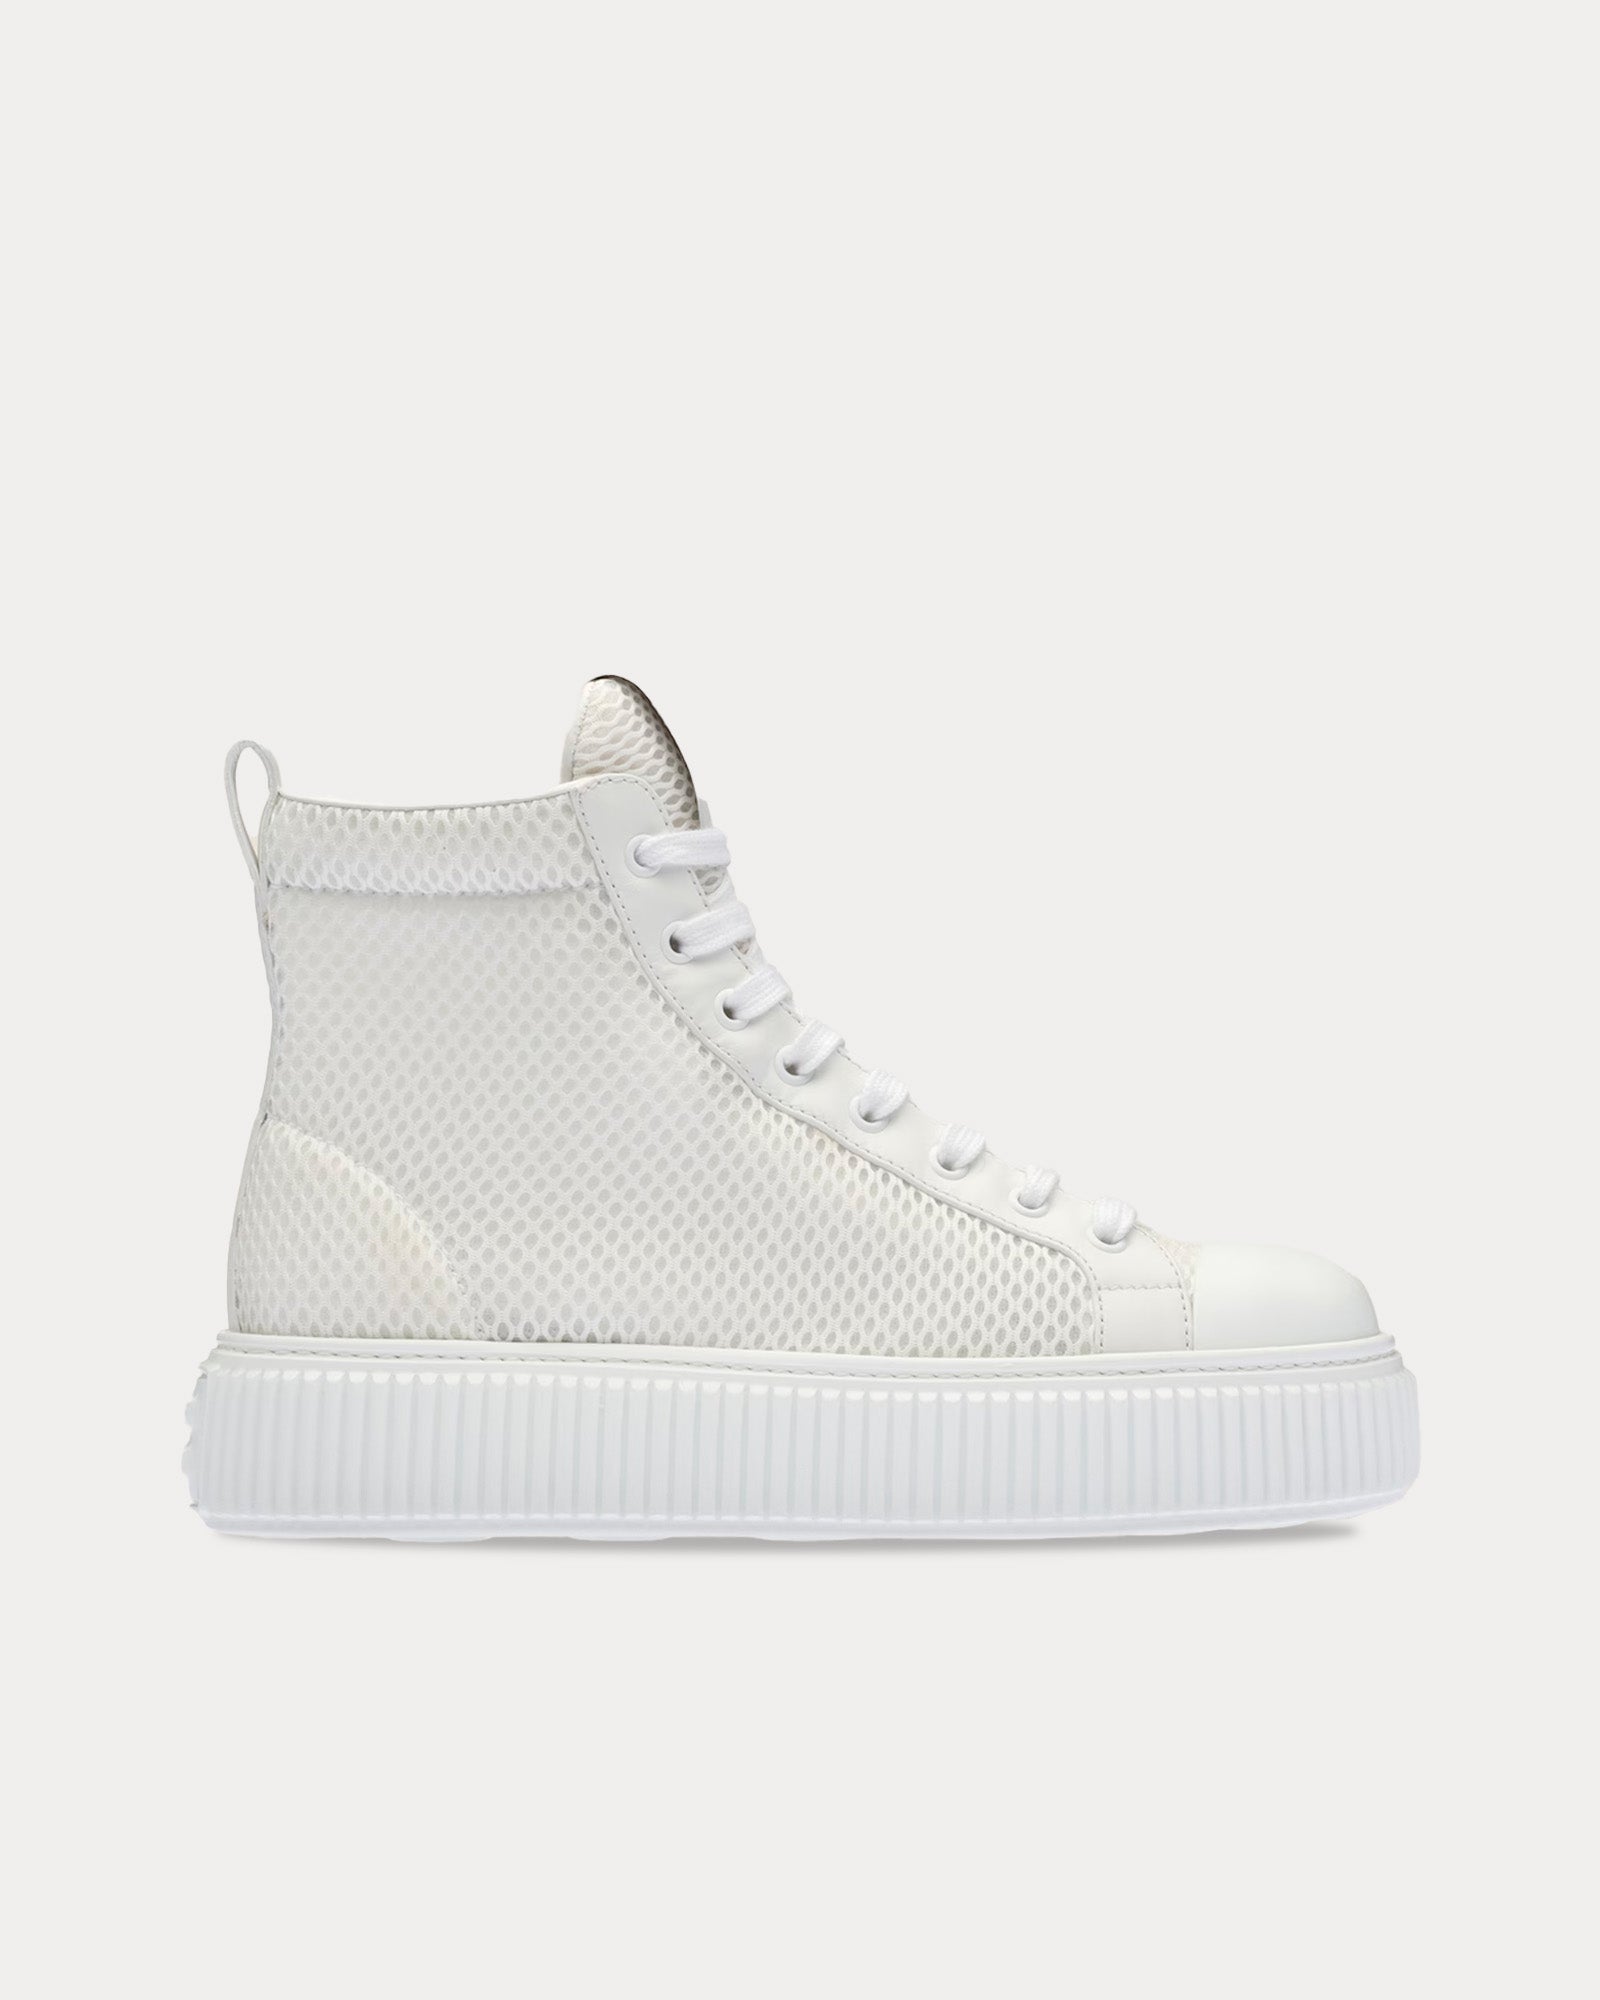 Miu Miu - Mesh Flatform White High Top Sneakers